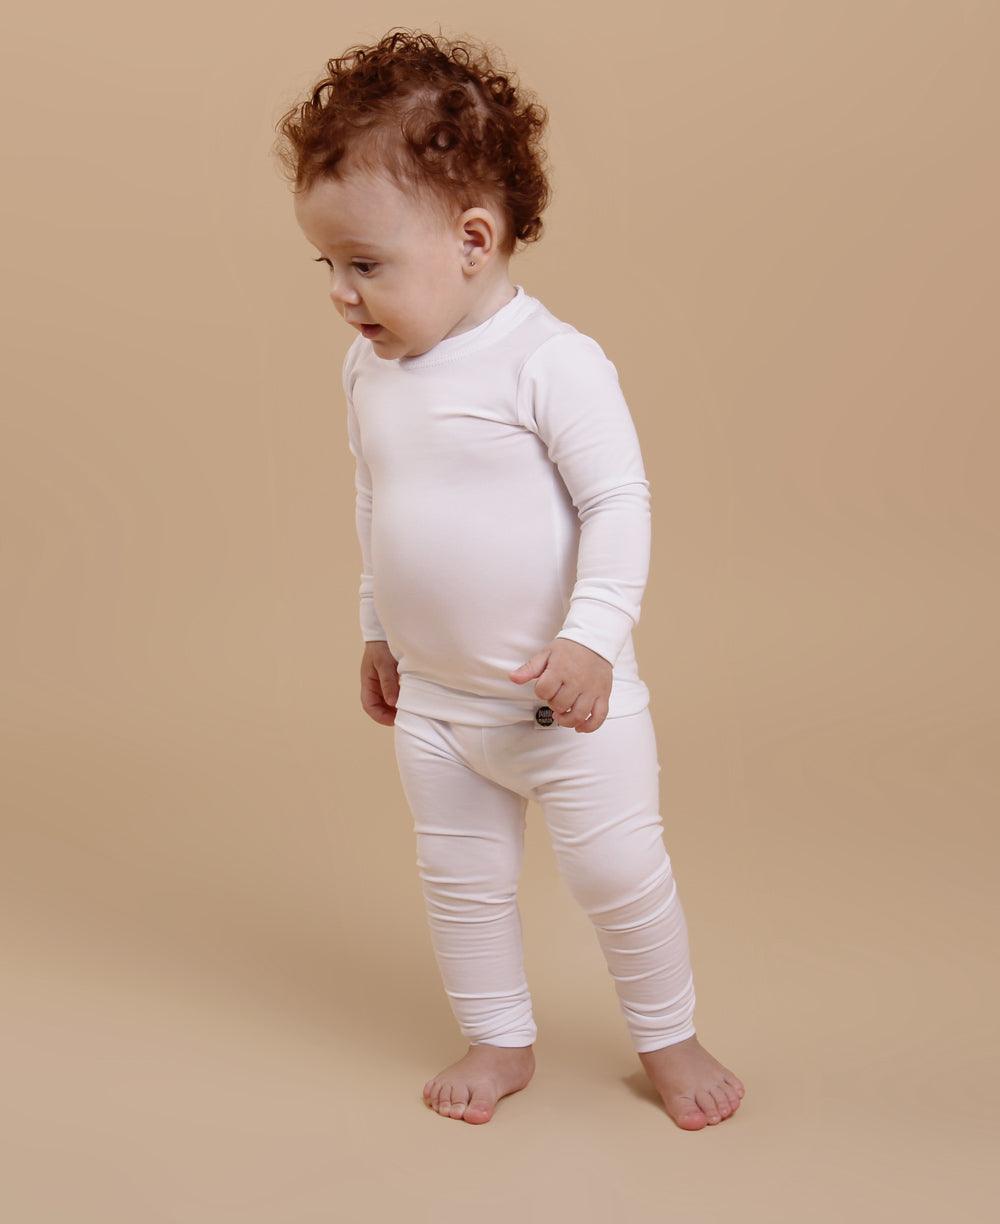 Calça Térmica de Bebê Unissex MiniMalista Liso Branco Algodão - MiniMalista Baby - anonovo, b2b, Baby, com-desconto-mm10, Frio, Menina, Menino, Neutro, tab-tam-calça-termica-bebe, tam-tam-calça-bolsao-bebe, Unissex -bebê-minimalista-estiloso